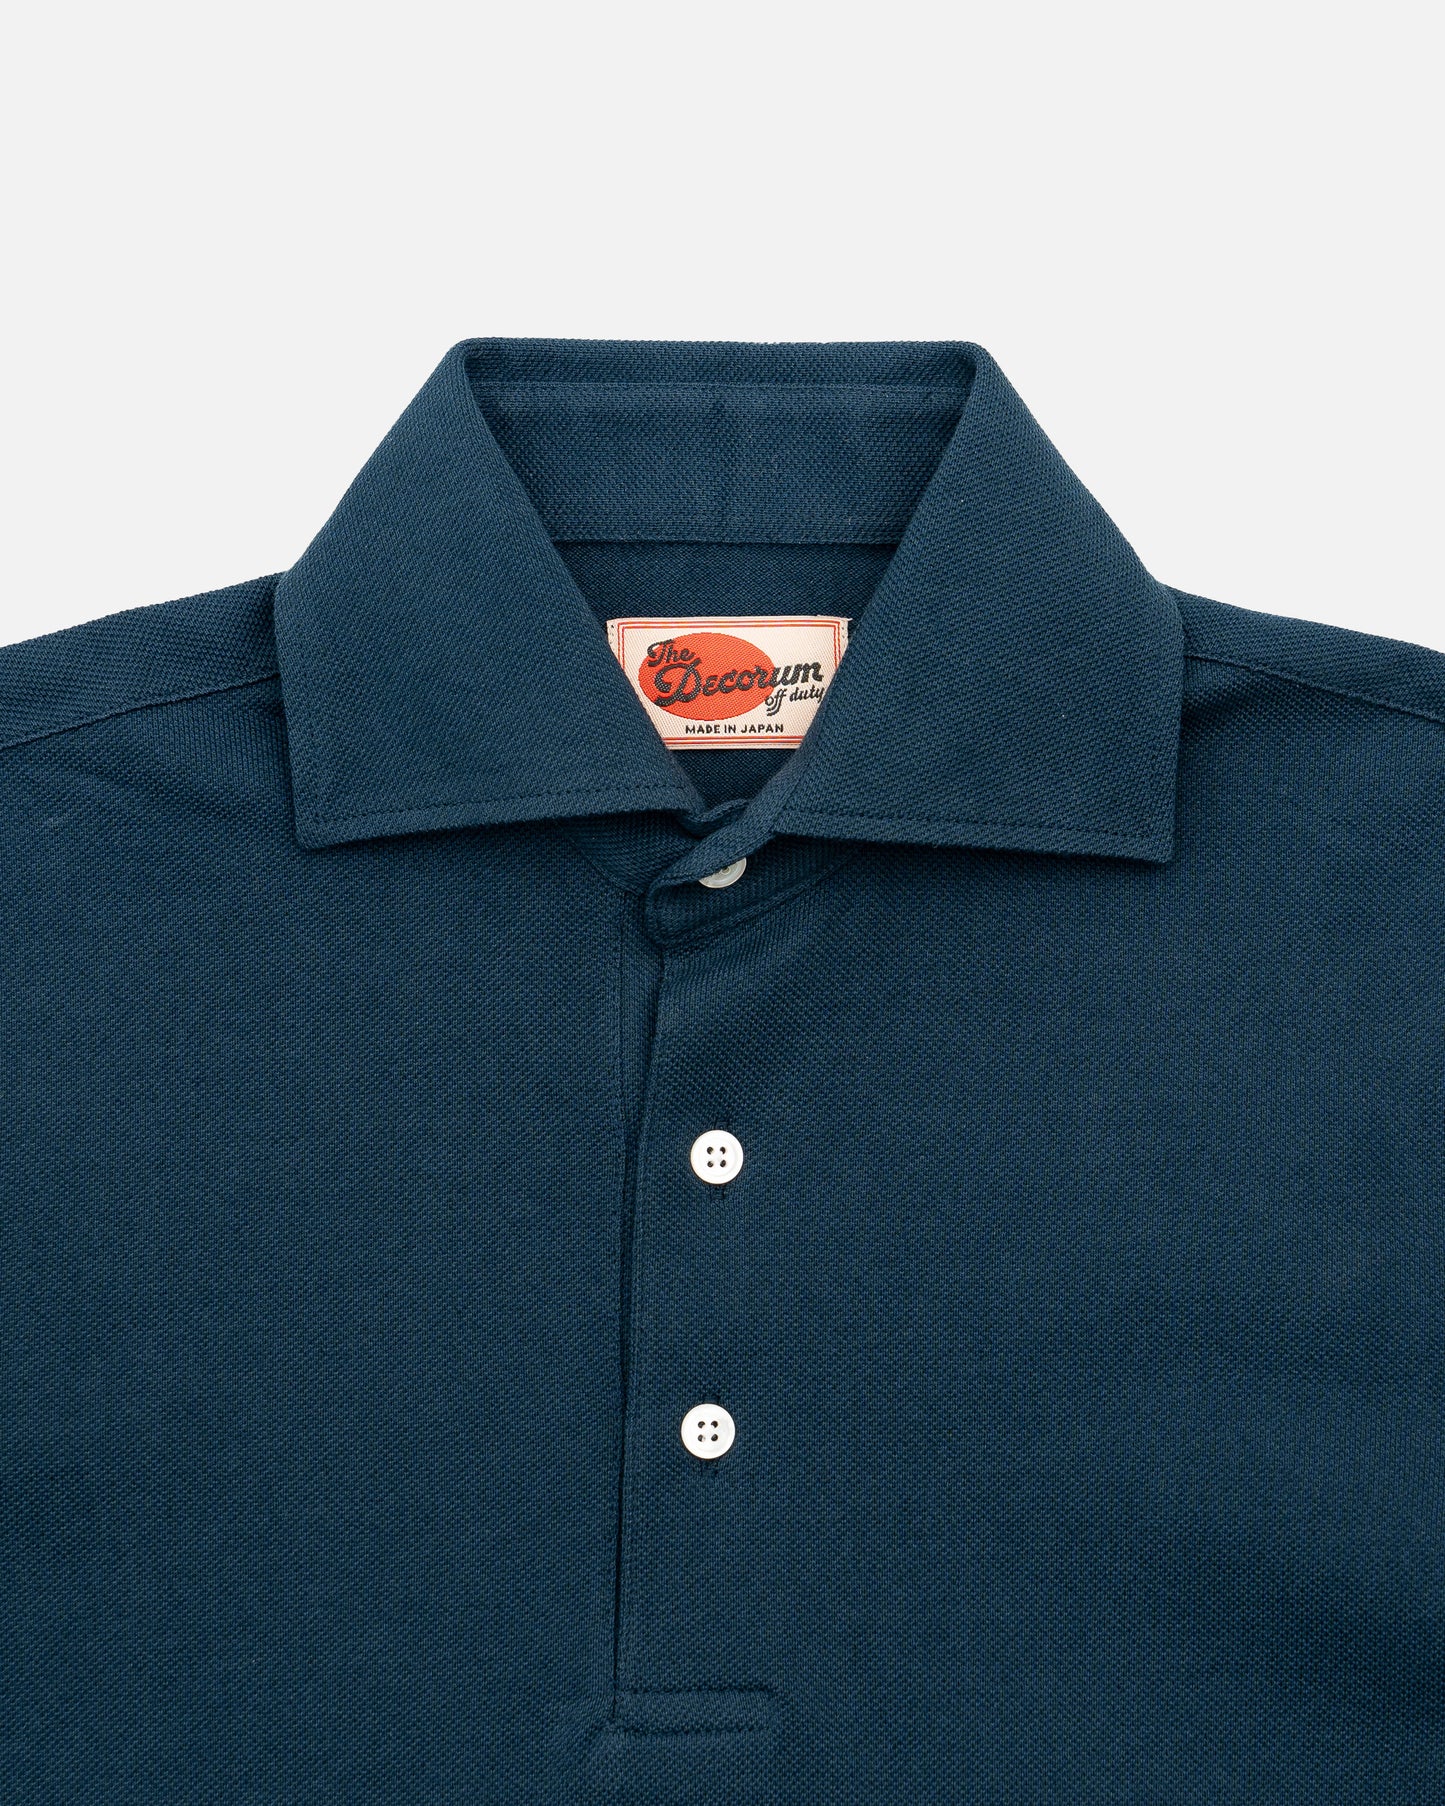 The Decorum Short Sleeve Polo Shirt - Indigo Blue